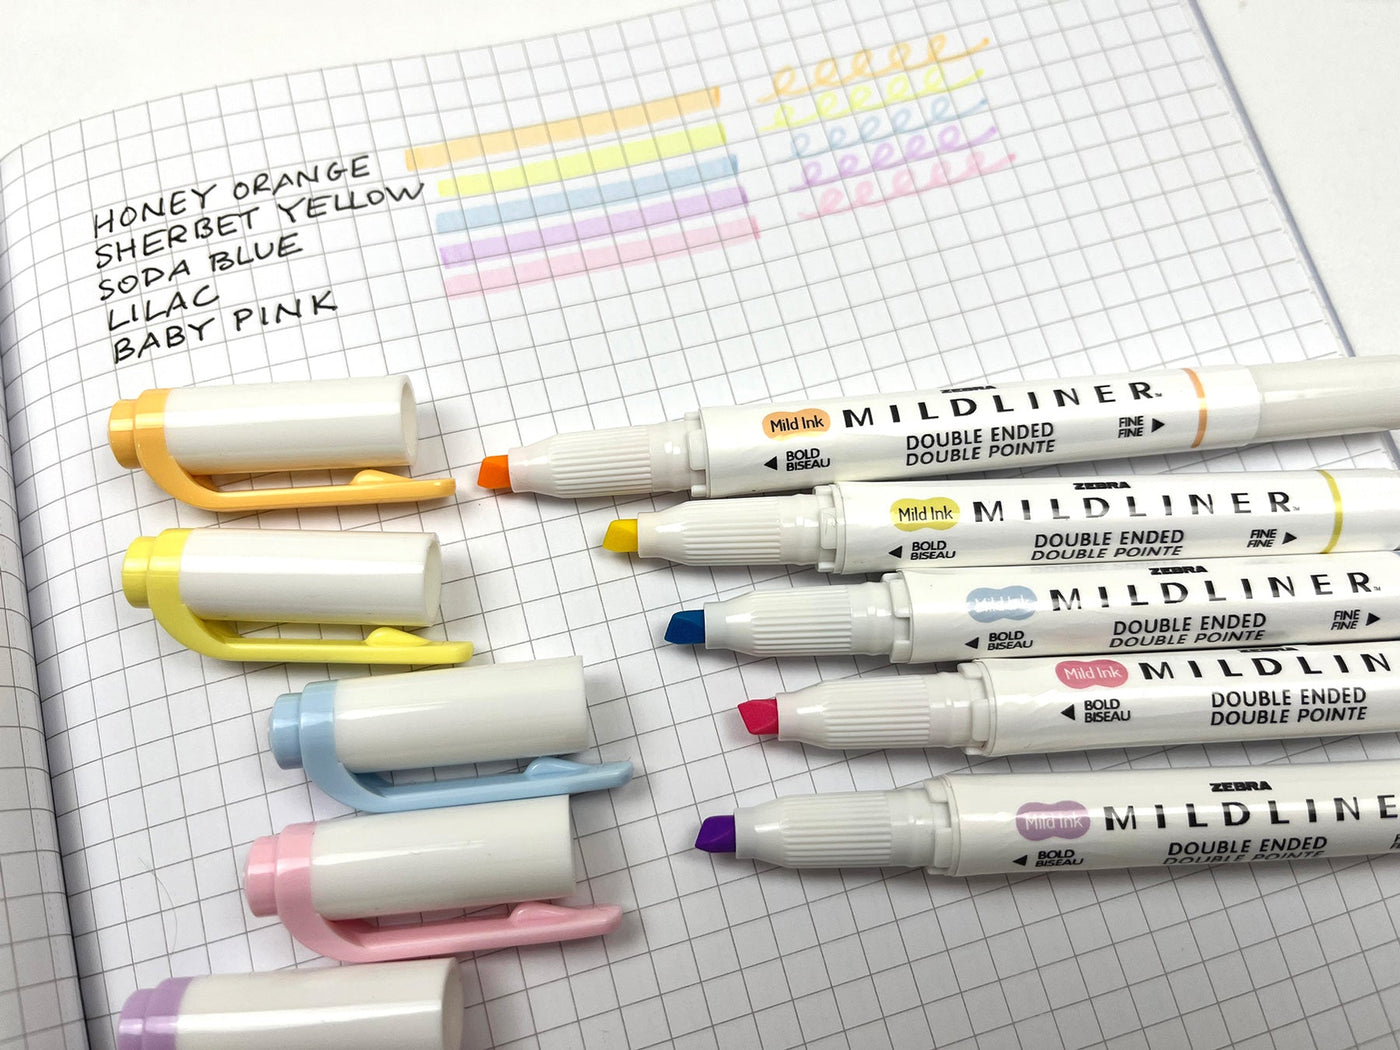 Zebra Pen Neutral Palette Set, Includes 8 Mildliner Highlighters and 2  ClickArt Markers, Assorted Neutral Vintage Ink Colors, 10-Pack (78601) 